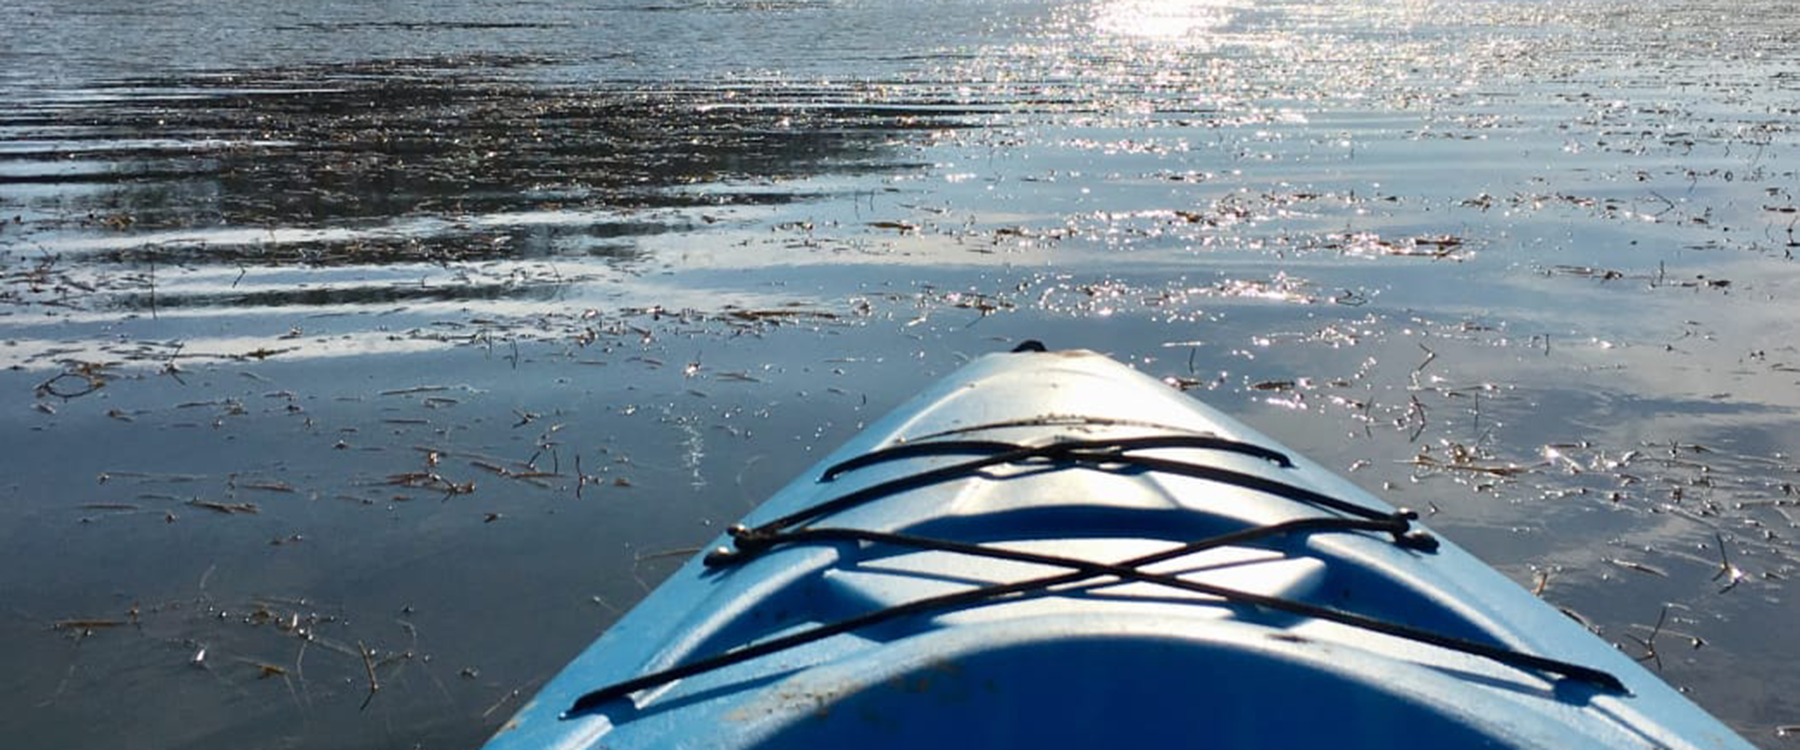 paddling Potomac river in winter